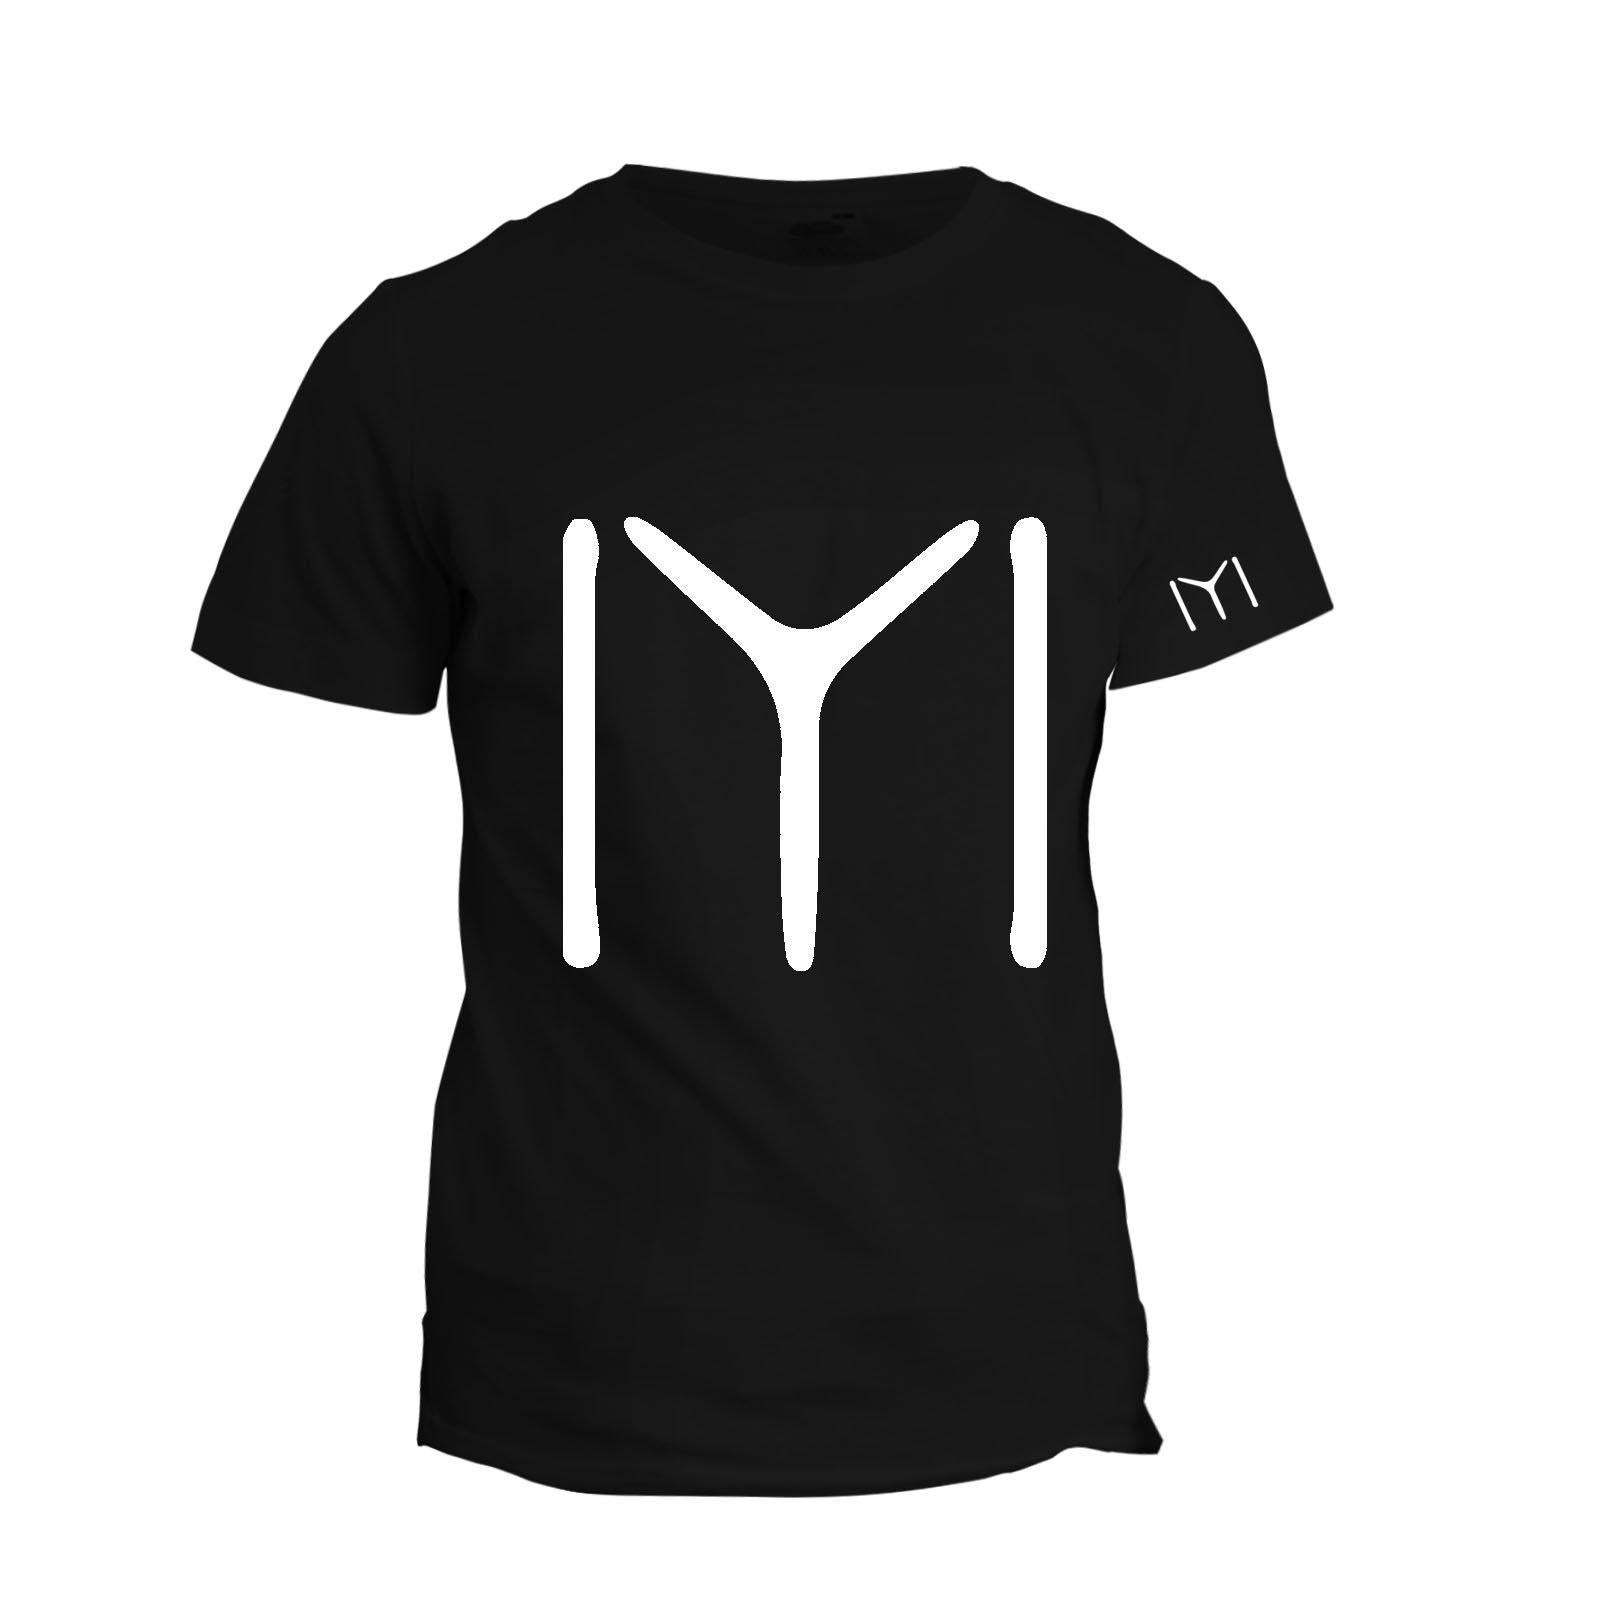 Kayi Men's IYI T-Shirt - KAYILAR PAZAR